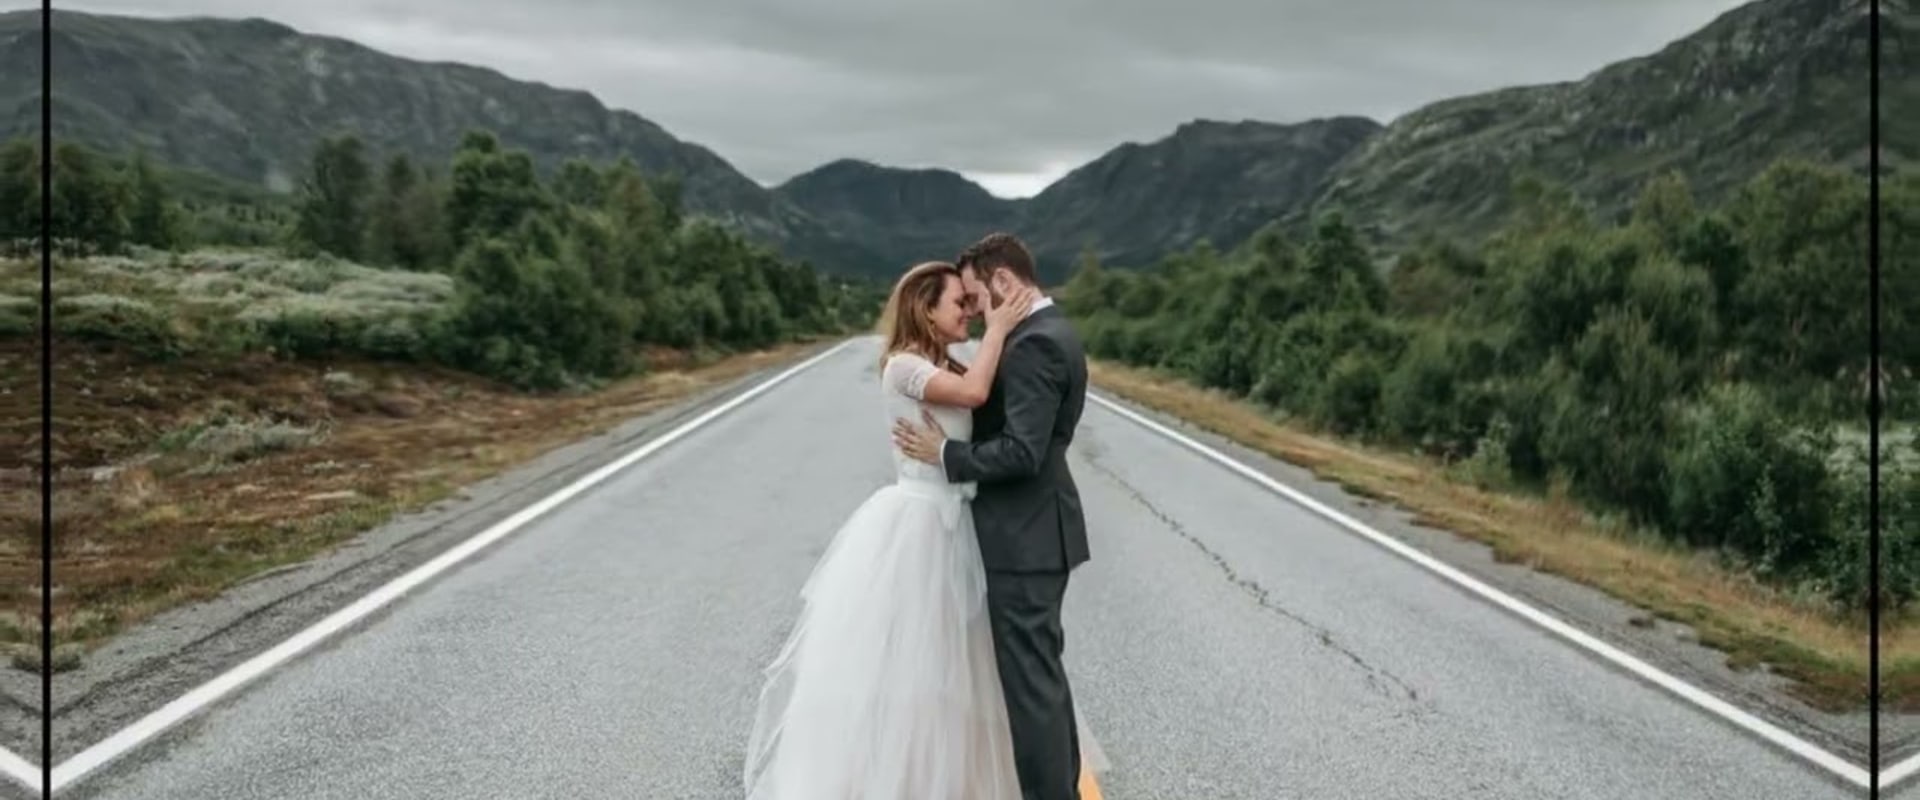 Comprender las reseñas en línea para elegir un fotógrafo de bodas